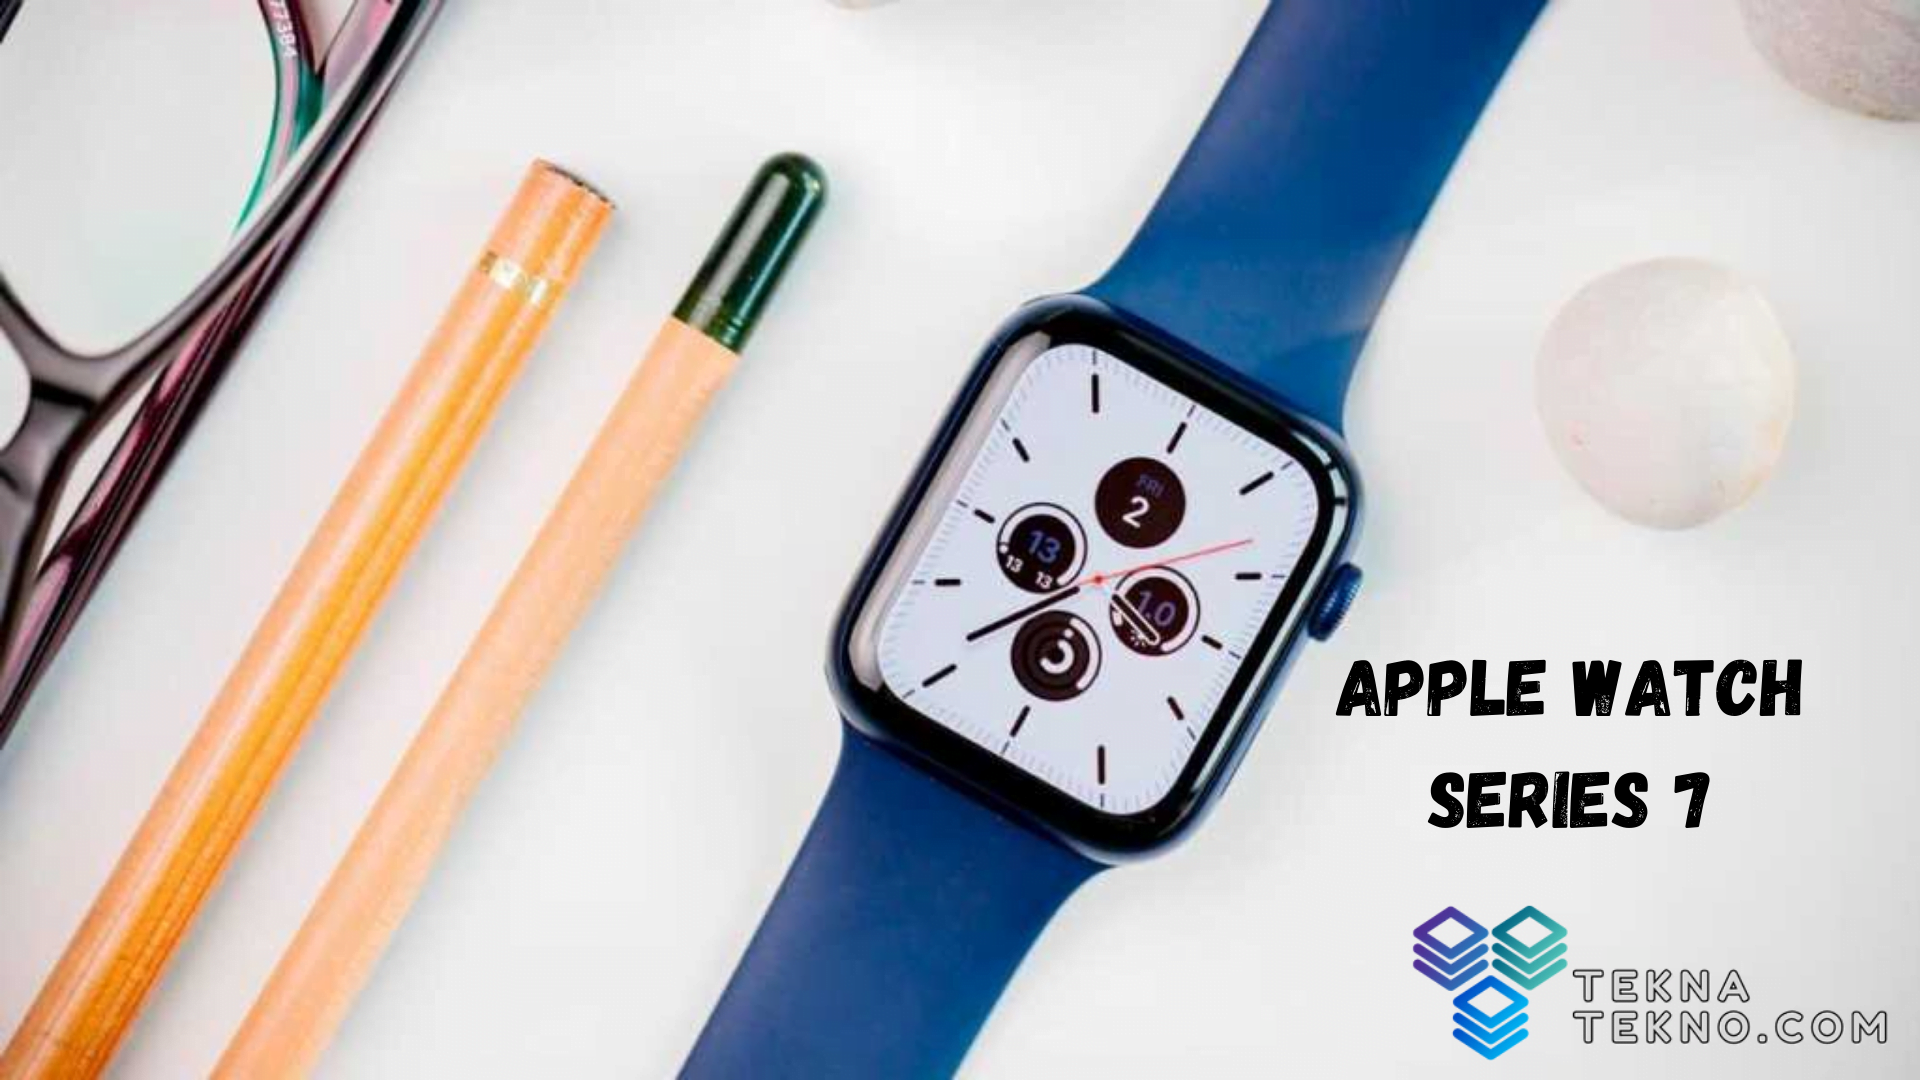 Spesifikasi dan Harga Apple Watch Series 7 Terbaru